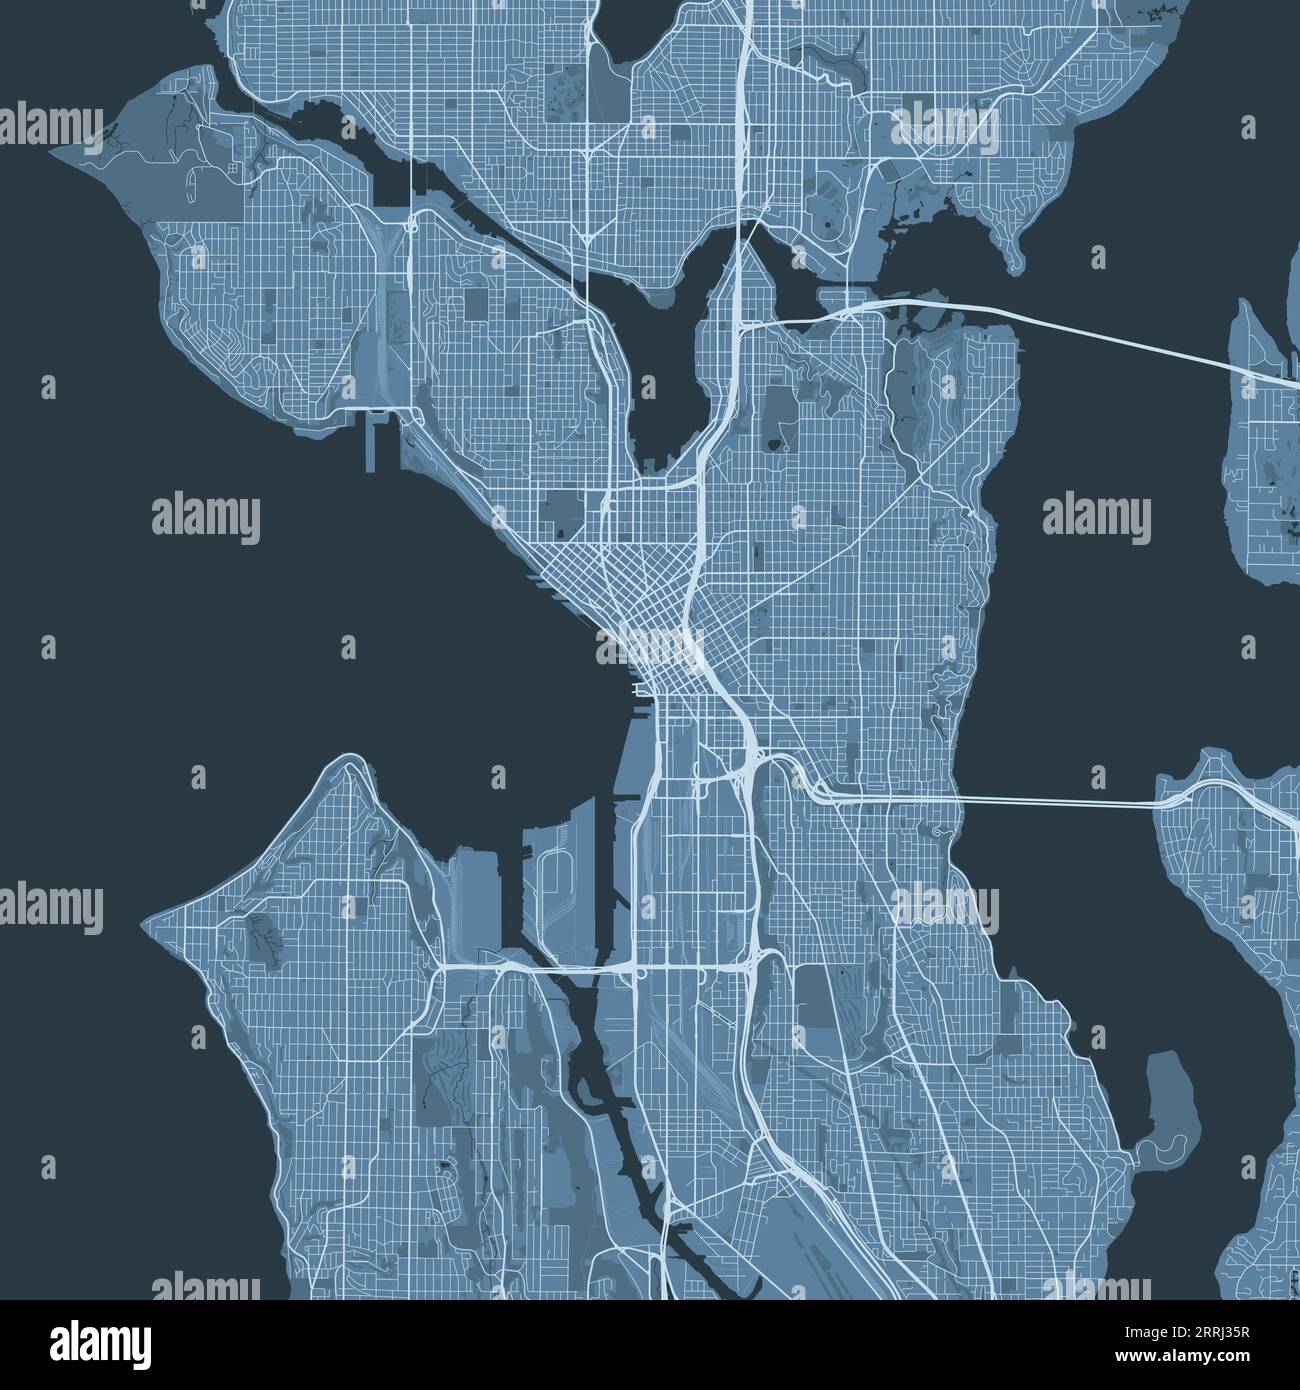 Blue Seattle Karte, Vereinigte Staaten, detaillierte Stadtkarte, Skyline Panorama. Dekorative grafische touristische Karte von Seattle Territory. Gebührenfreier Vektor Stock Vektor